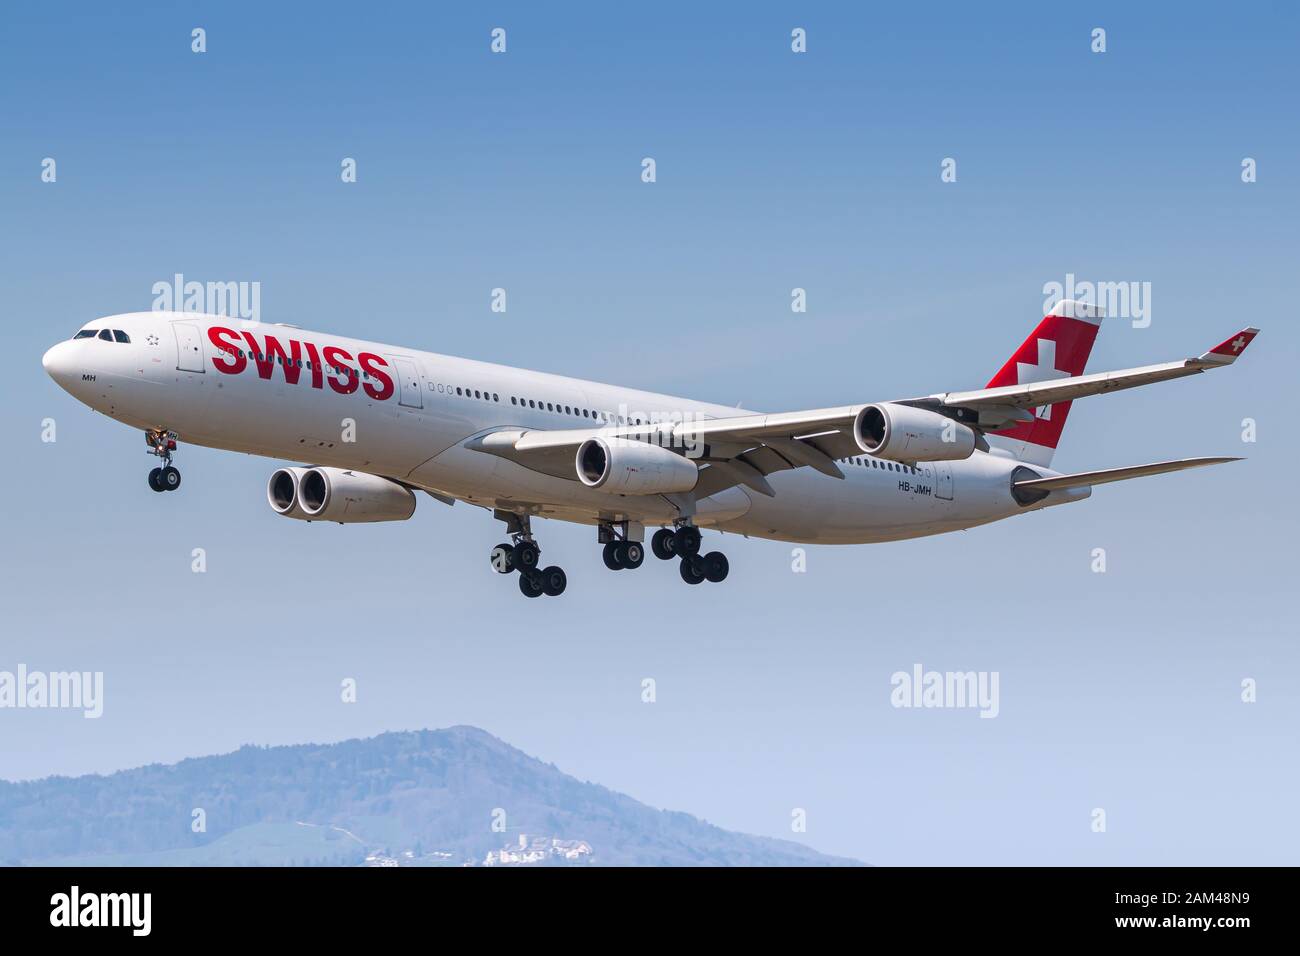 Zürich, Schweiz - 30. April 2018: Swiss International Airlines Airbus A340 Flugzeug am Flughafen Zürich (ZRH) in der Schweiz. Airbus ist ein Flugzeug Stockfoto